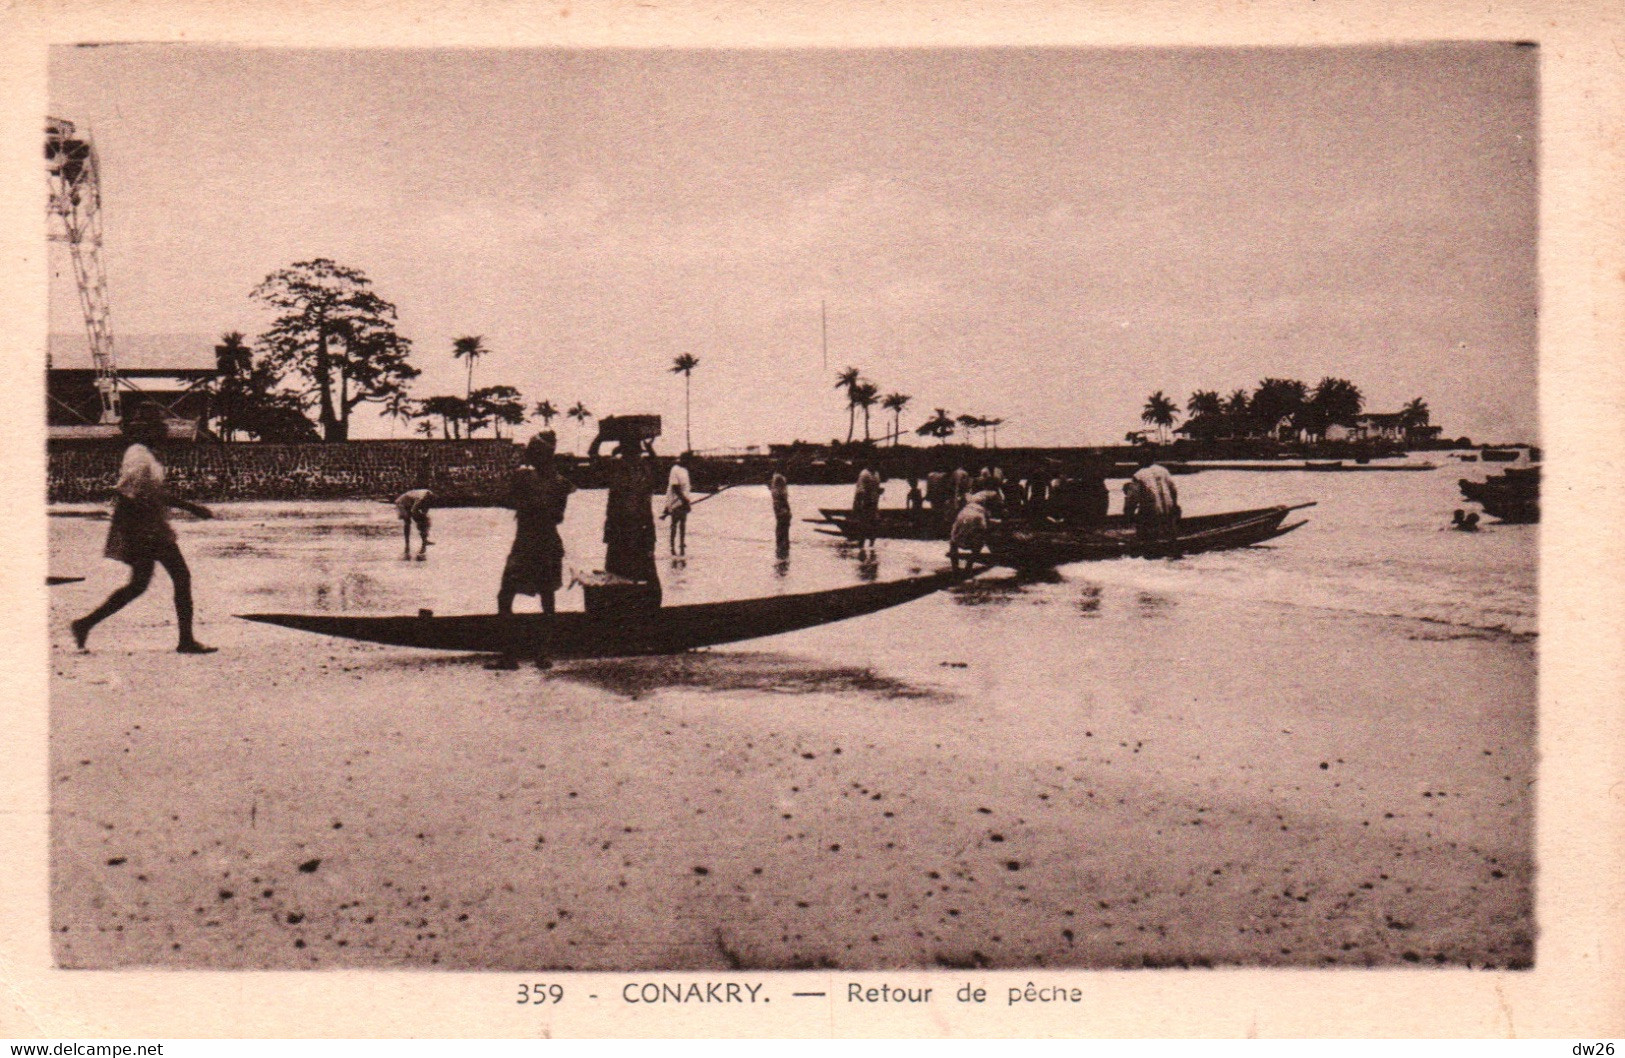 Conakry (Guinée) Sur La Plage, Retour De Pêche - Photo E. Habkouk - Carte N° 359 Non Circulée - French Guinea